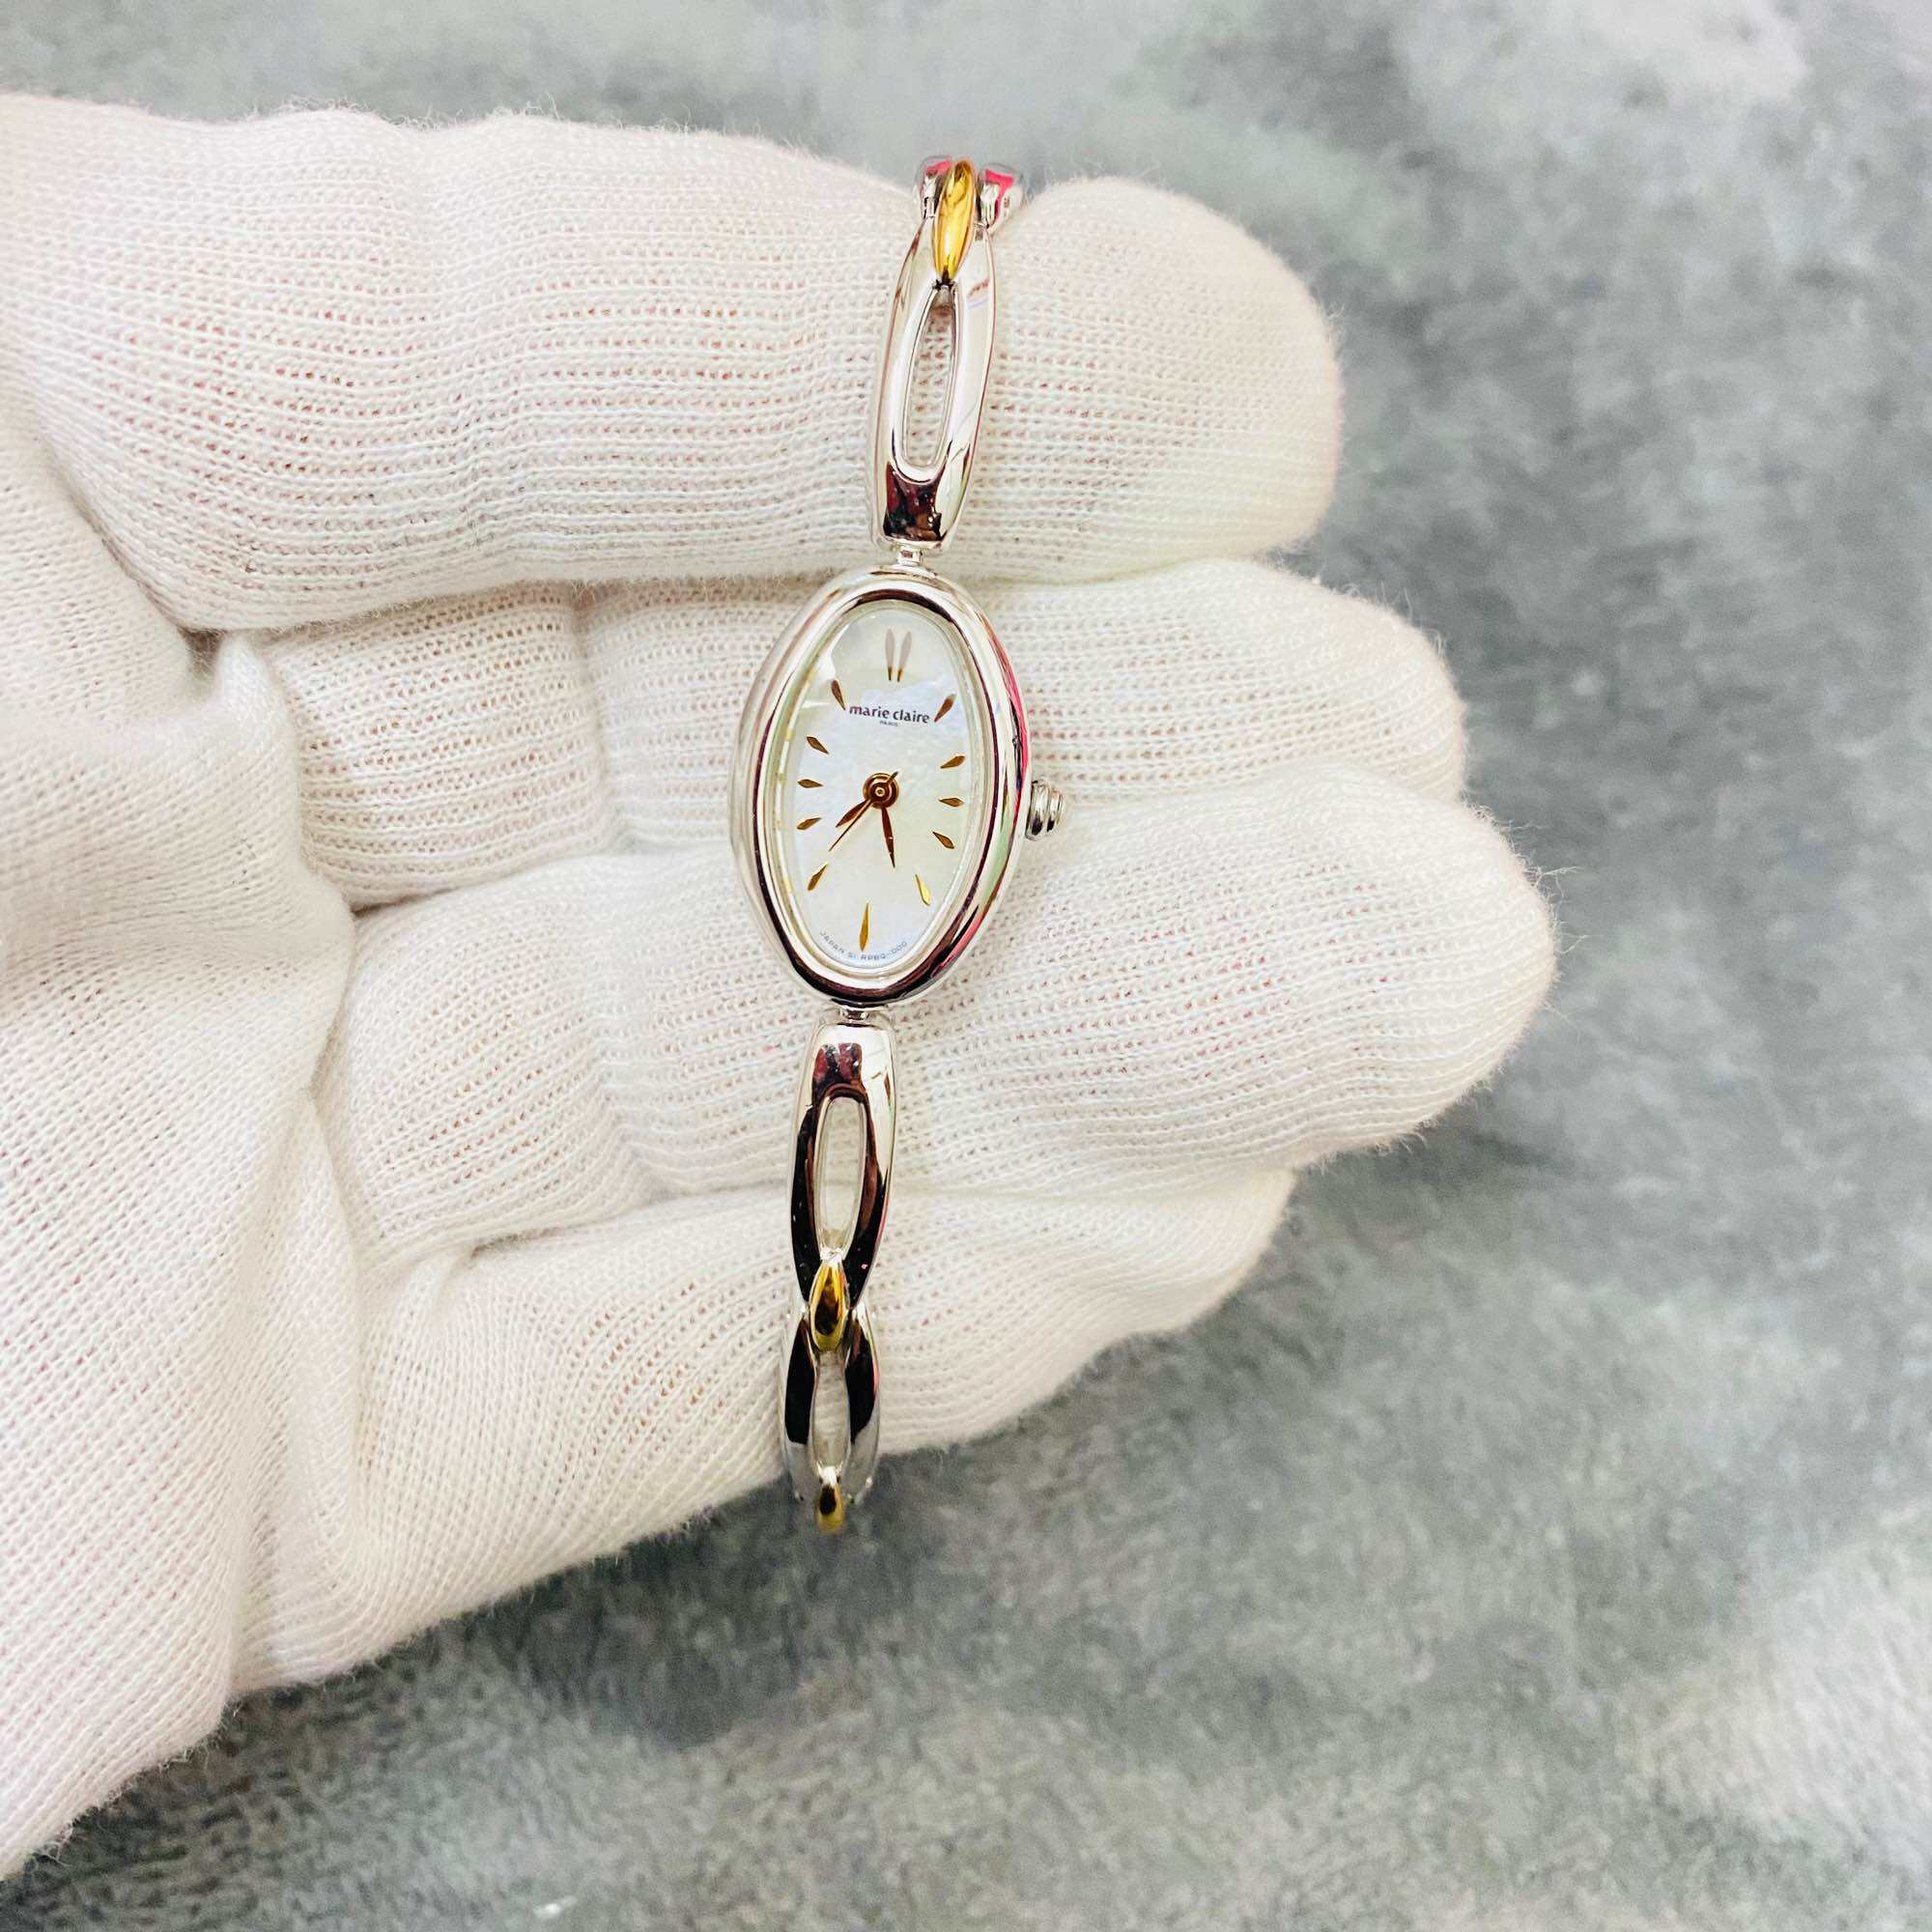 Đồng hồ nữ Marie claire Nhật Bản , size 17mm, Mặt khảm trai, Cực đẹp độc lạ,  Mới 98%, dây zin siêu đẹp